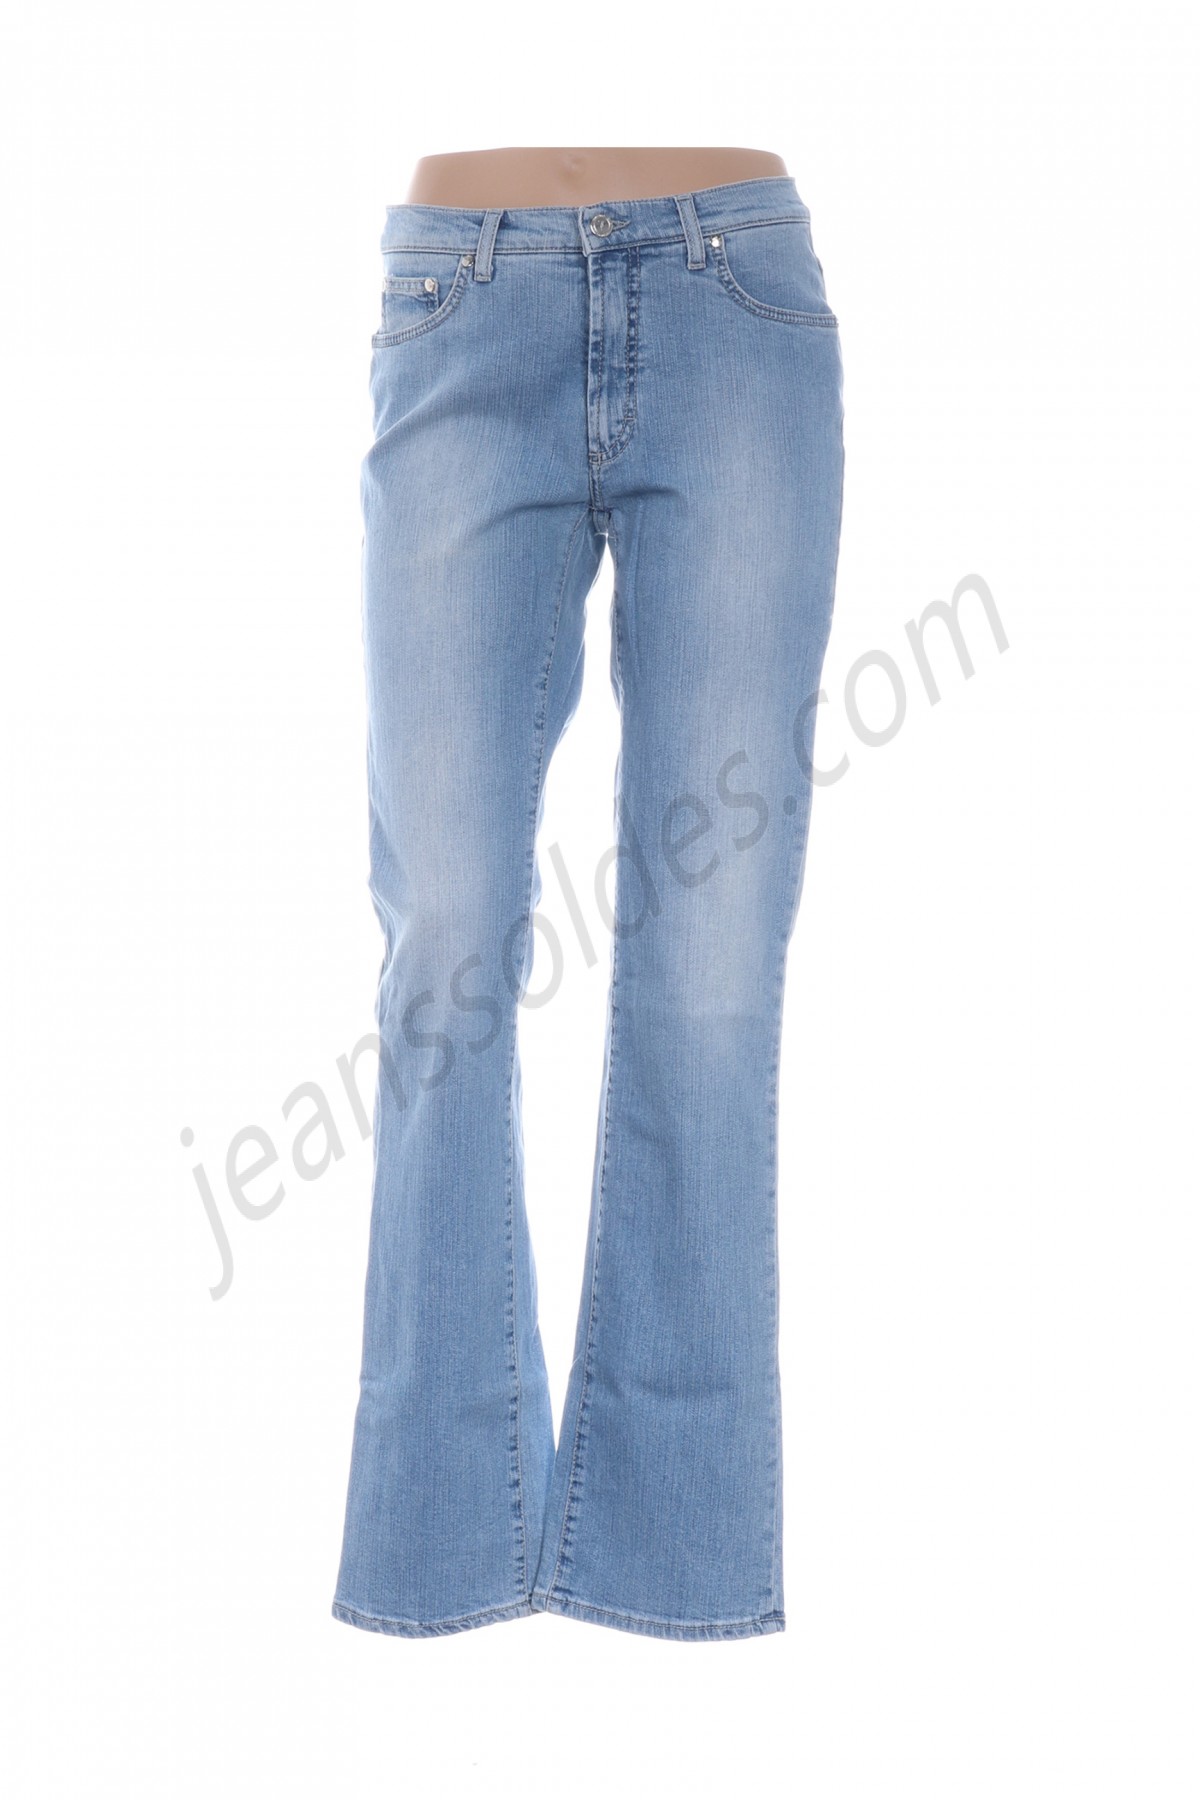 trussardi jeans-Jeans coupe slim prix d’amis - -0